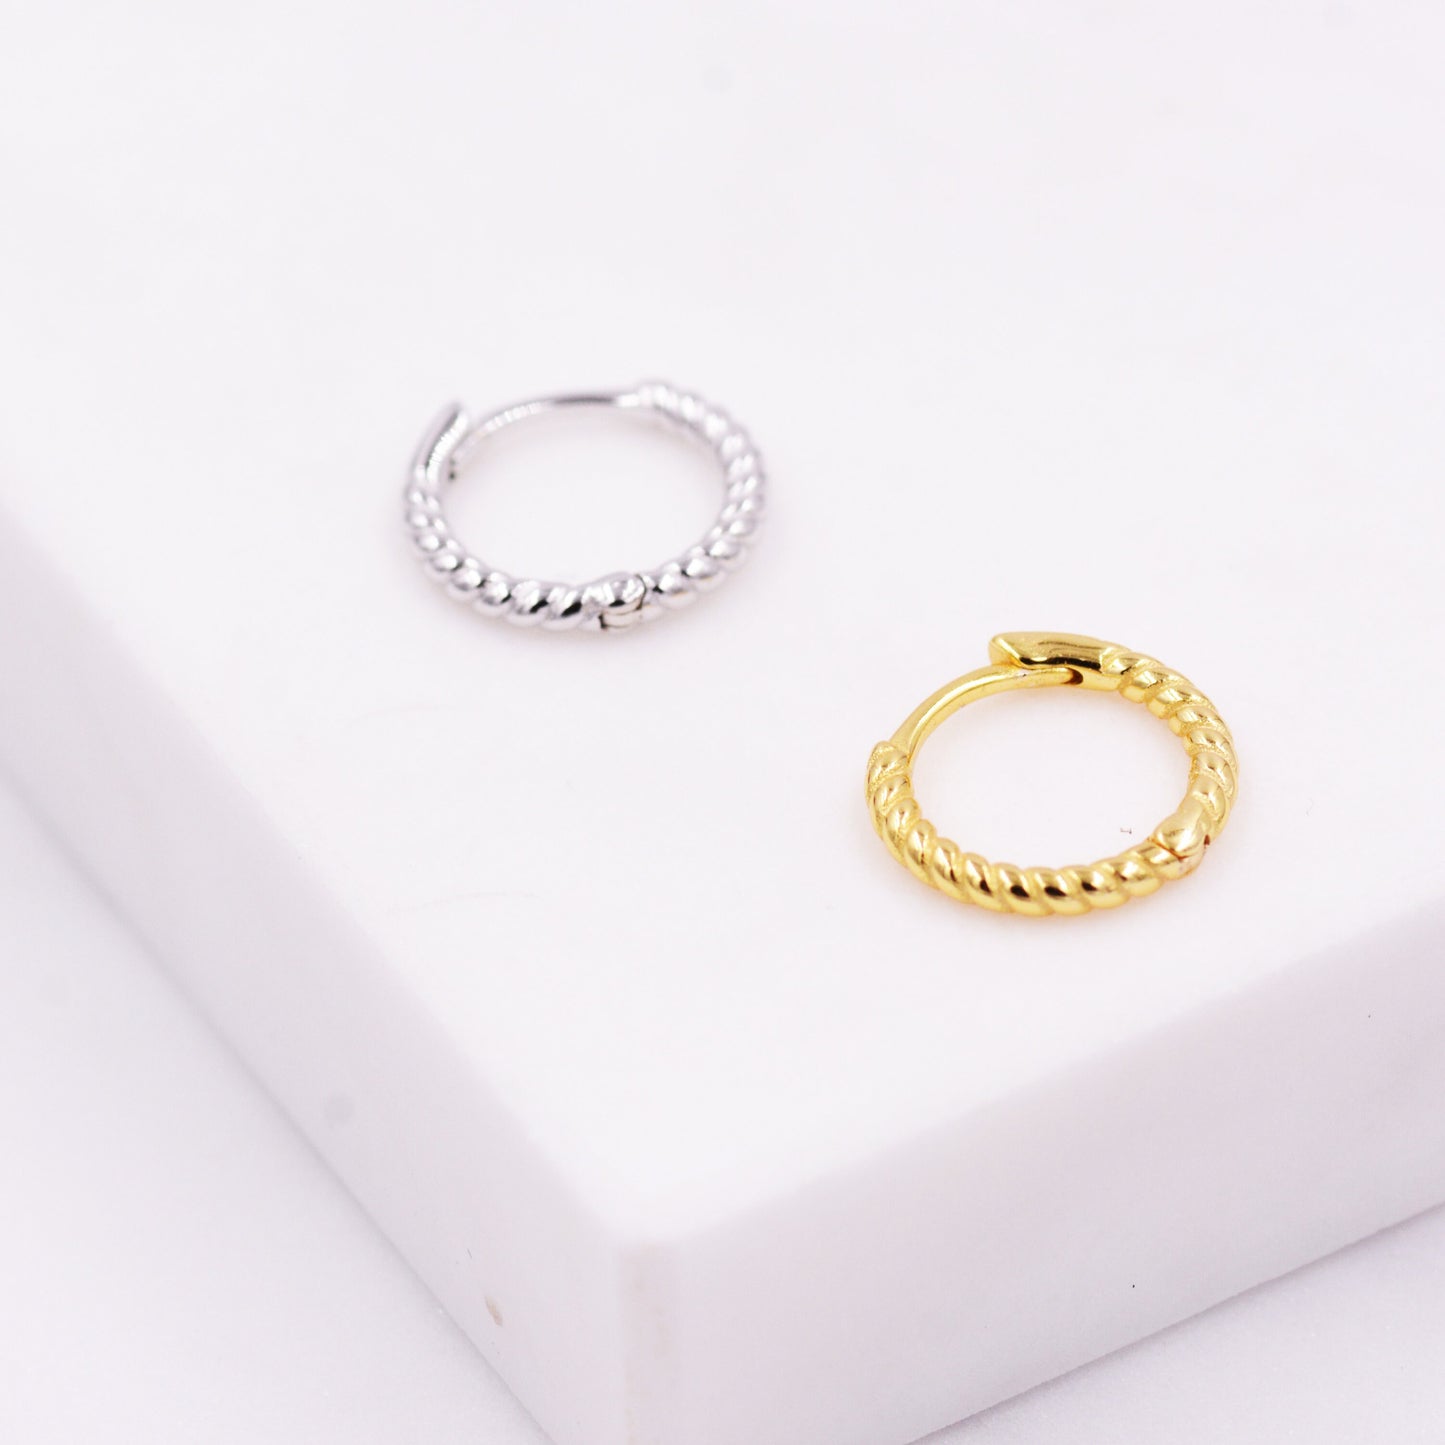 Twist Huggie Hoop Earrings in Sterling Silver, Twisted Hoop Earrings, Silver or Gold, Minimalist Geometric Hoops